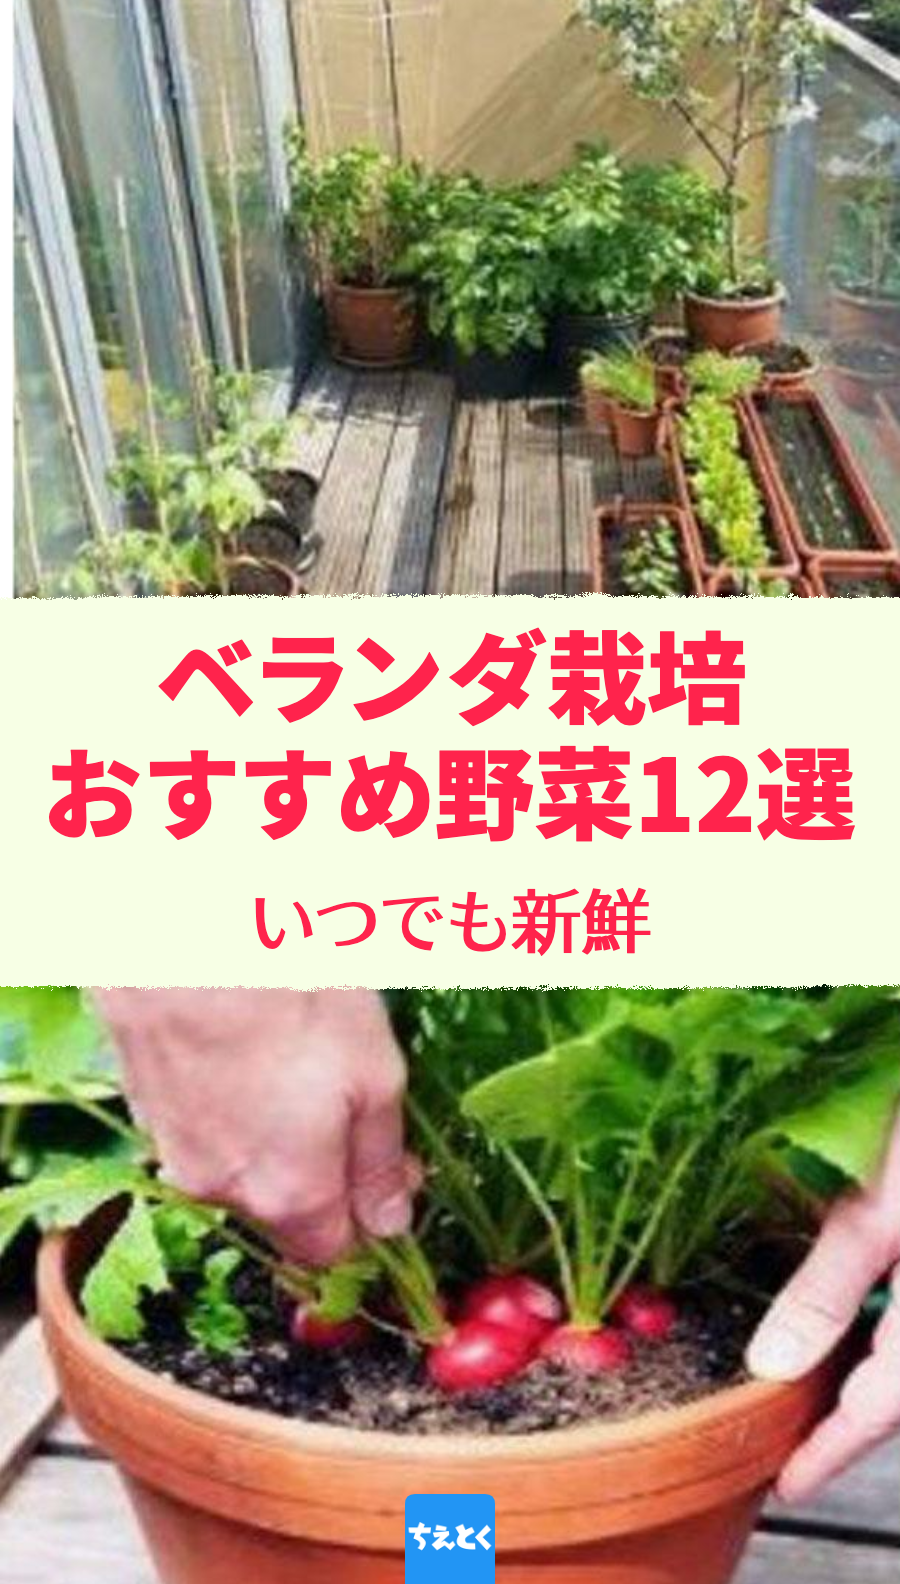 【ベランダ菜園】たくさん収穫 おすすめの野菜12選